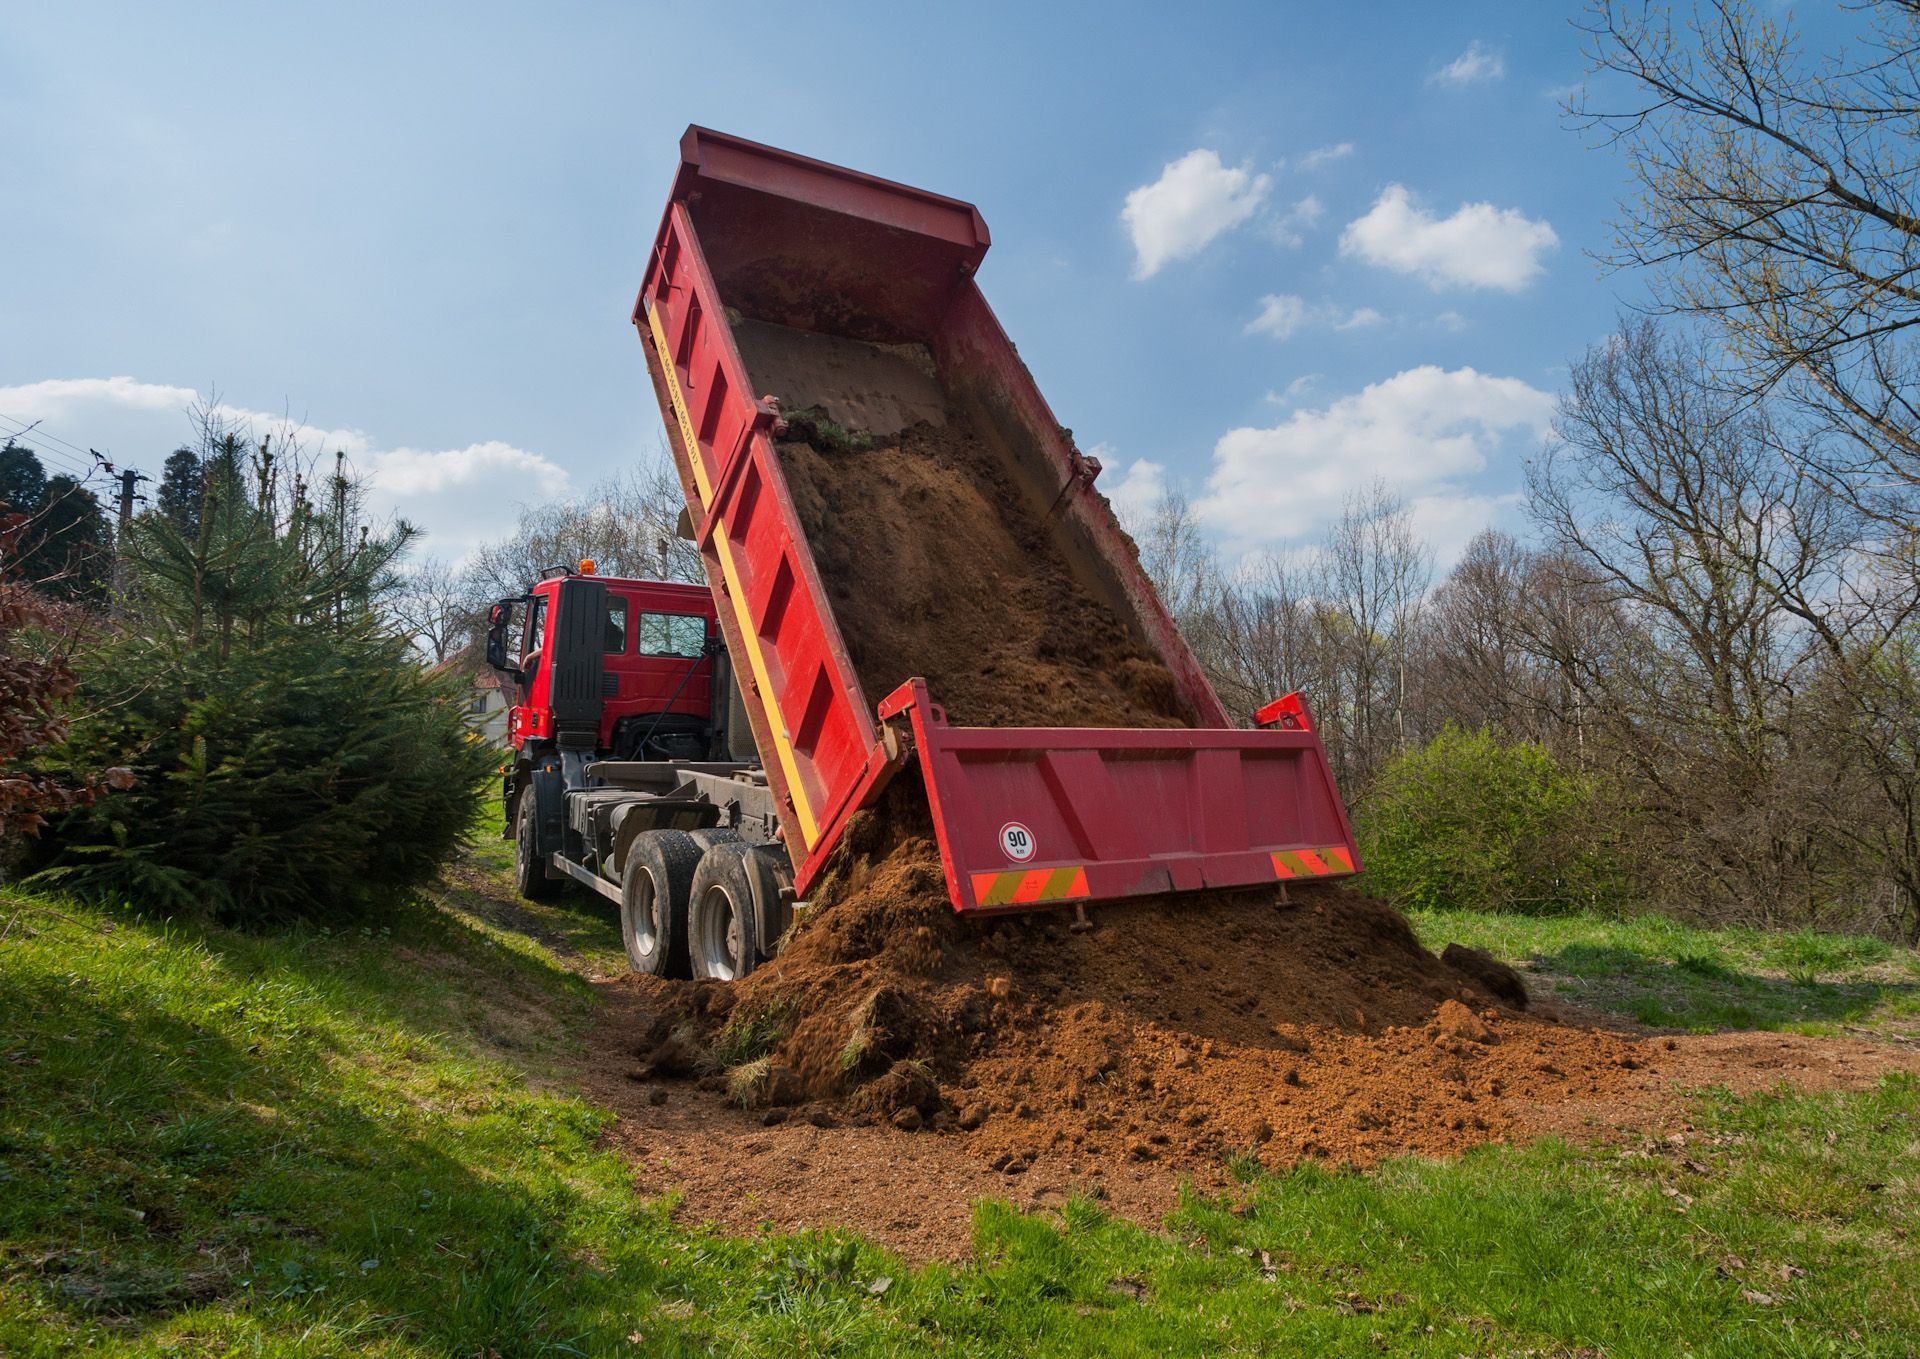 A red dump truck is dumping dirt on a grassy hillside